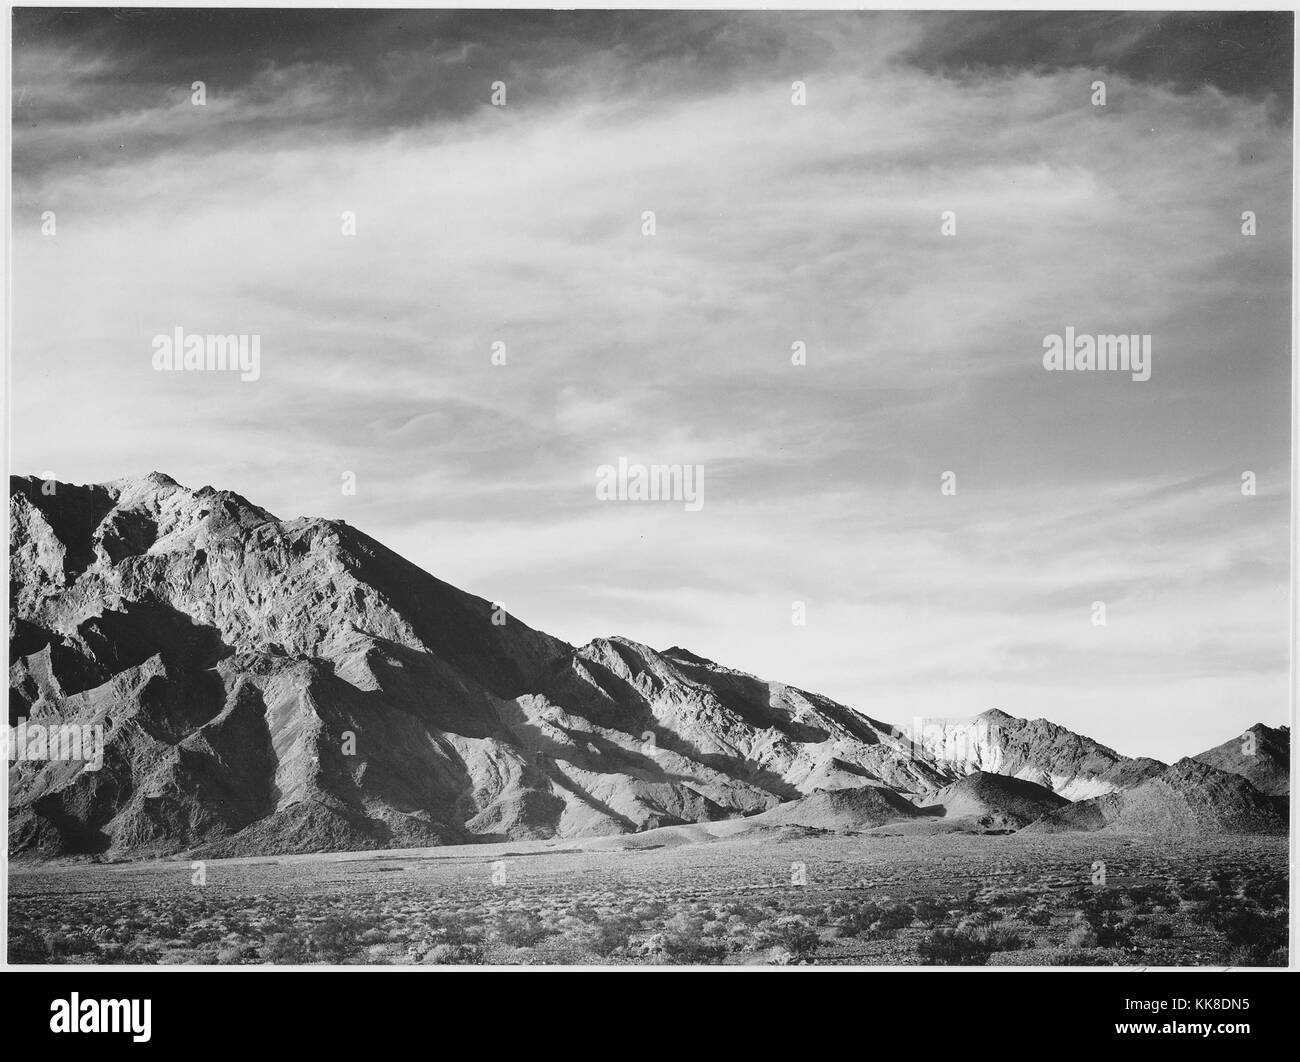 Eine schwarze und weiße Landschaft Foto aus dem Death Valley National Park, den flachen Boden führt zu den Rocky Mountain Peak im Hintergrund kurz Wüste Pflanzen bedeckt ist, wird das Bild stammt aus einer Serie von Fotografien bekannt als das Wandbild Projekt von Ansel Adams, er durch den National Park Service 1941 beauftragt wurde, eine fotografische Wandbild für das Ministerium des Innern in Washington DC zu erstellen, wird das Projekt zu einem Ende kam wegen des Zweiten Weltkrieges, die ursprünglich als Death Valley National Monument im Jahre 1933 bezeichnete es in einem Nationalpark im Jahr 1994 wurde der Park umfasst Teile von Cal Stockfoto